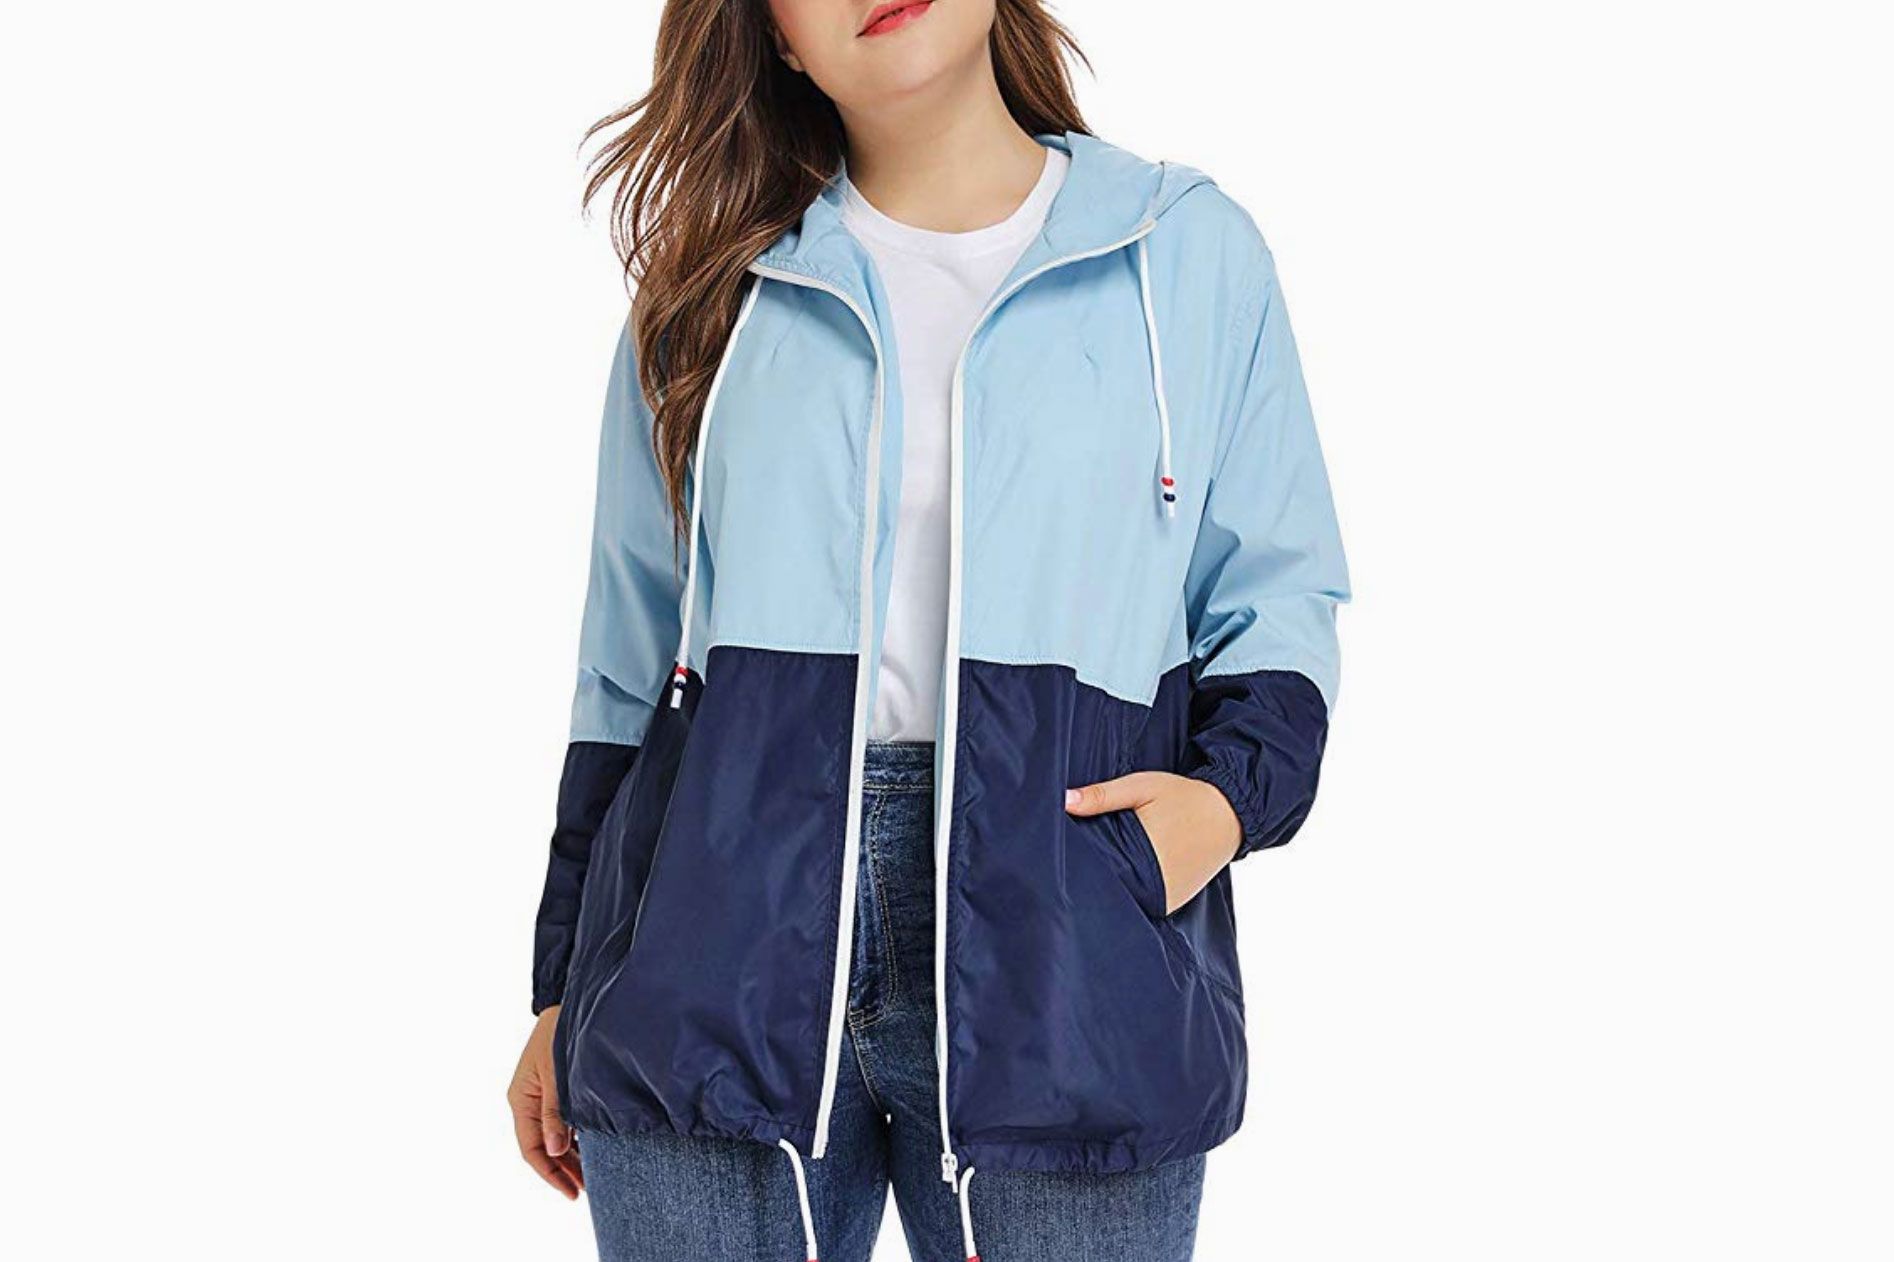 Yuncai Girls Printed Long Sleeves Hooded Raincoat Waterproof Windproof Rain Jacket